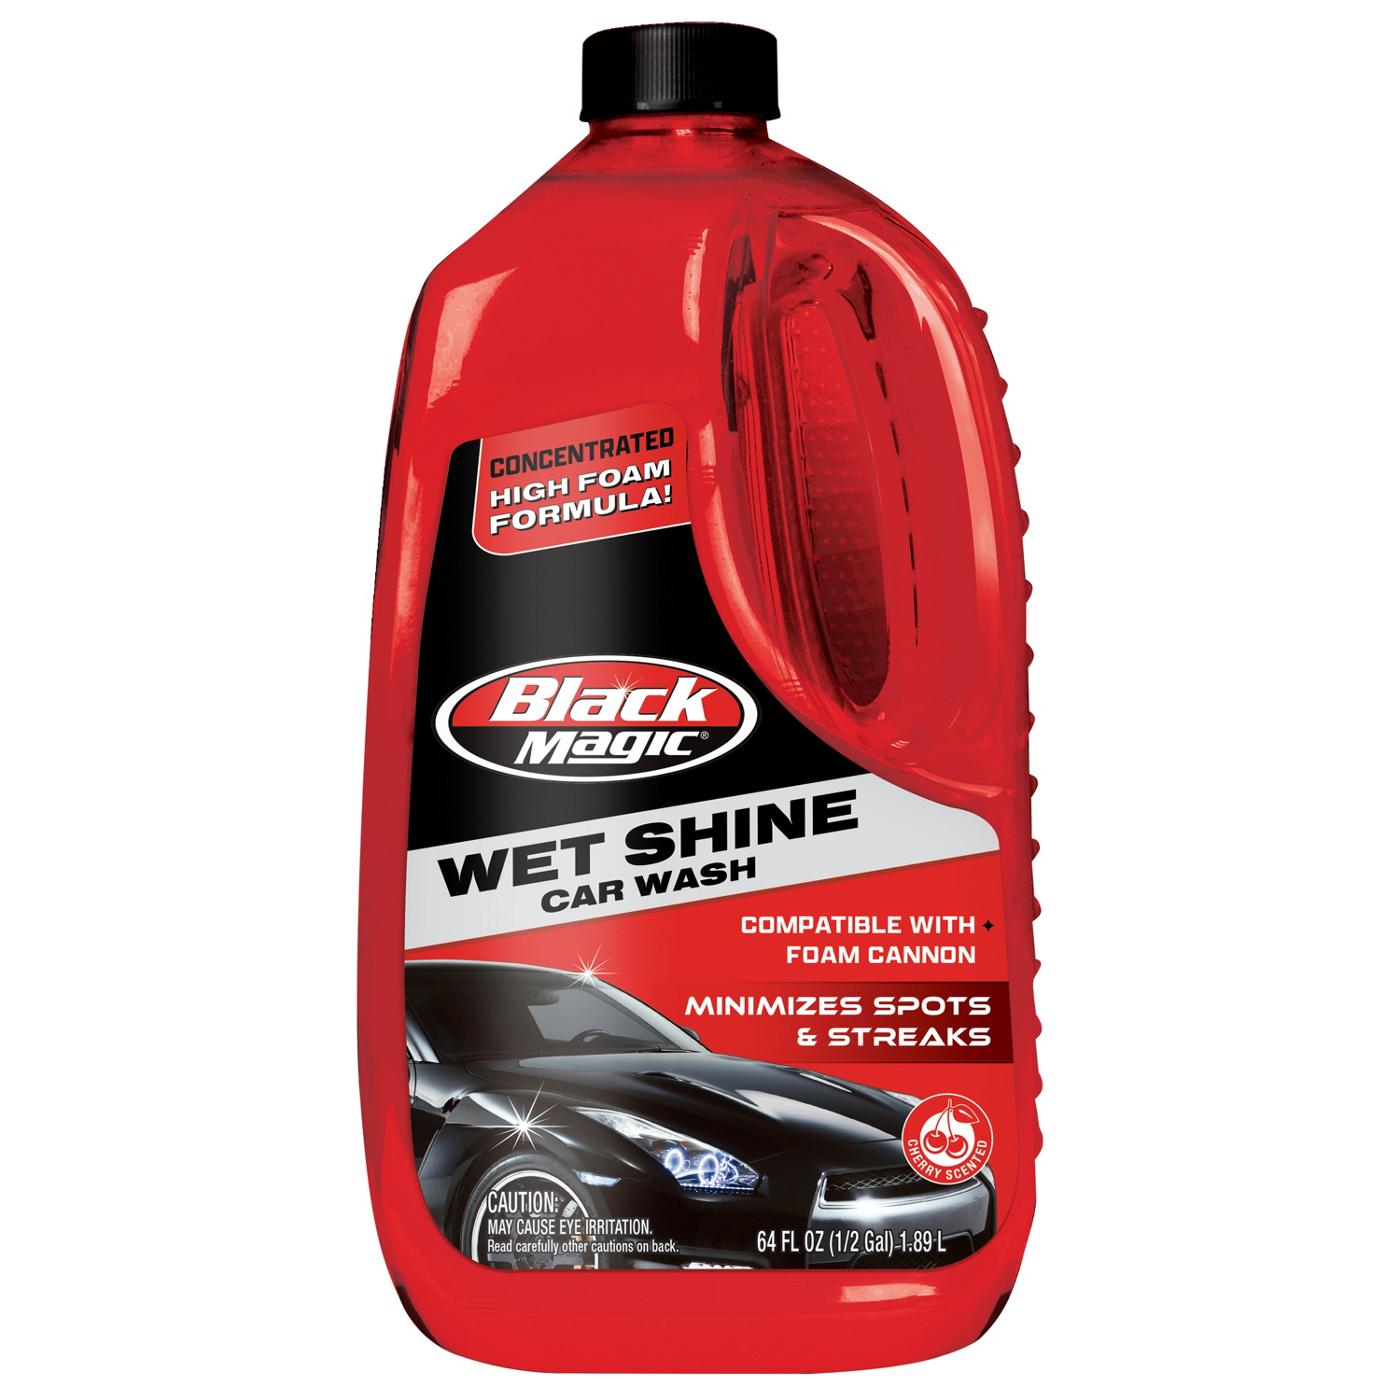 Black Magic Wet Shine Car Wash; image 1 of 2